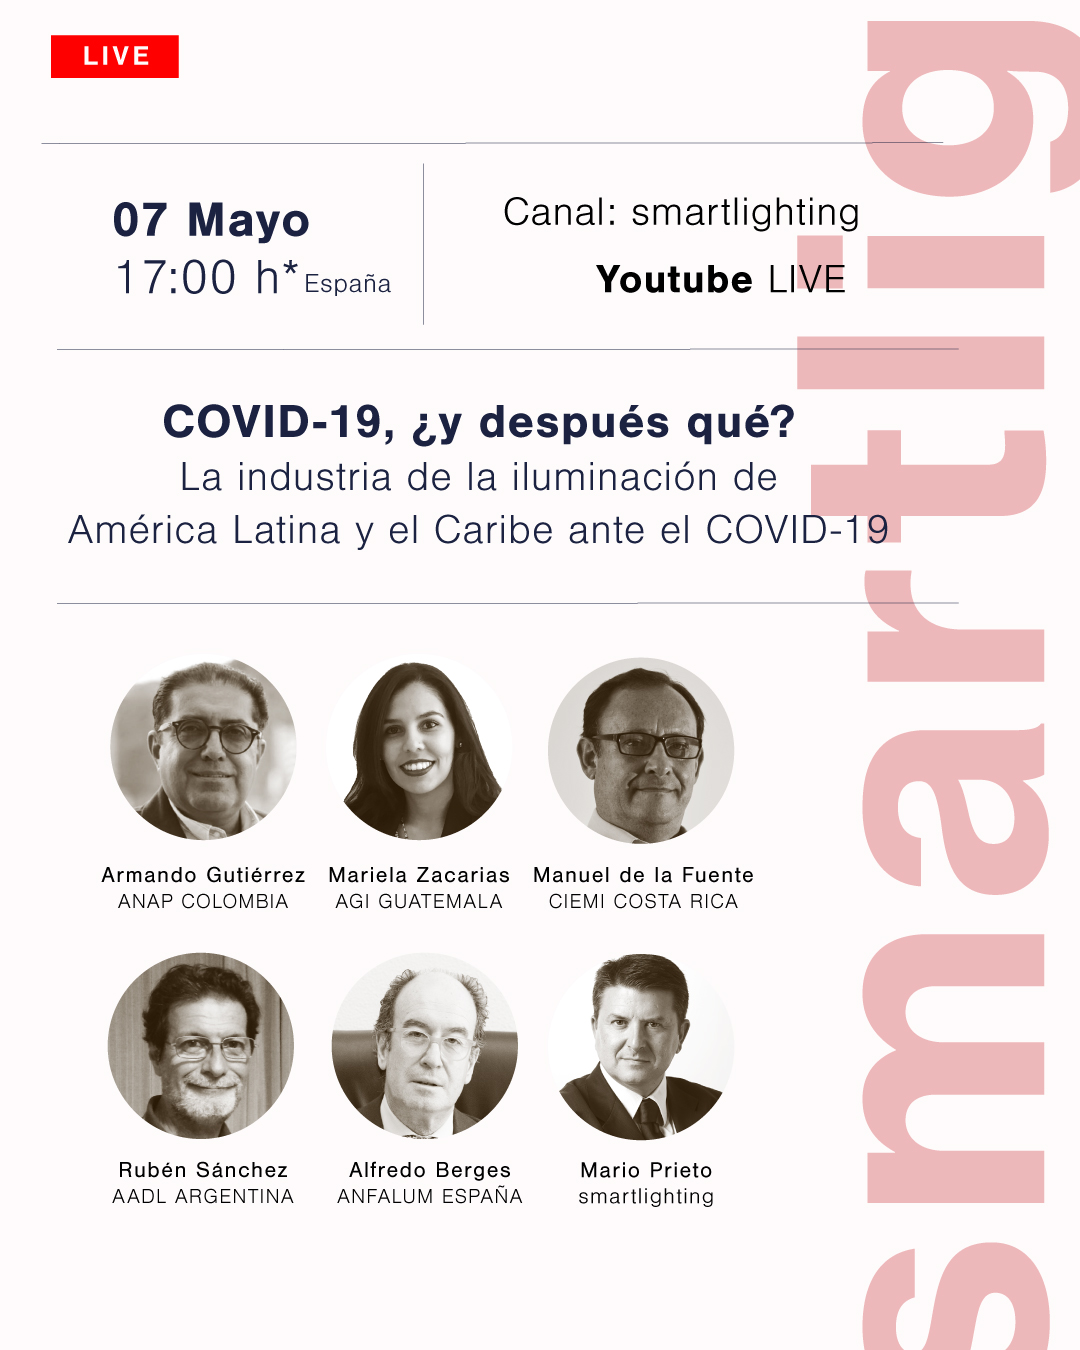 America Latina, COVID-19, coronavirus, Latinoamerica, Mario Prieto, ANFALUM